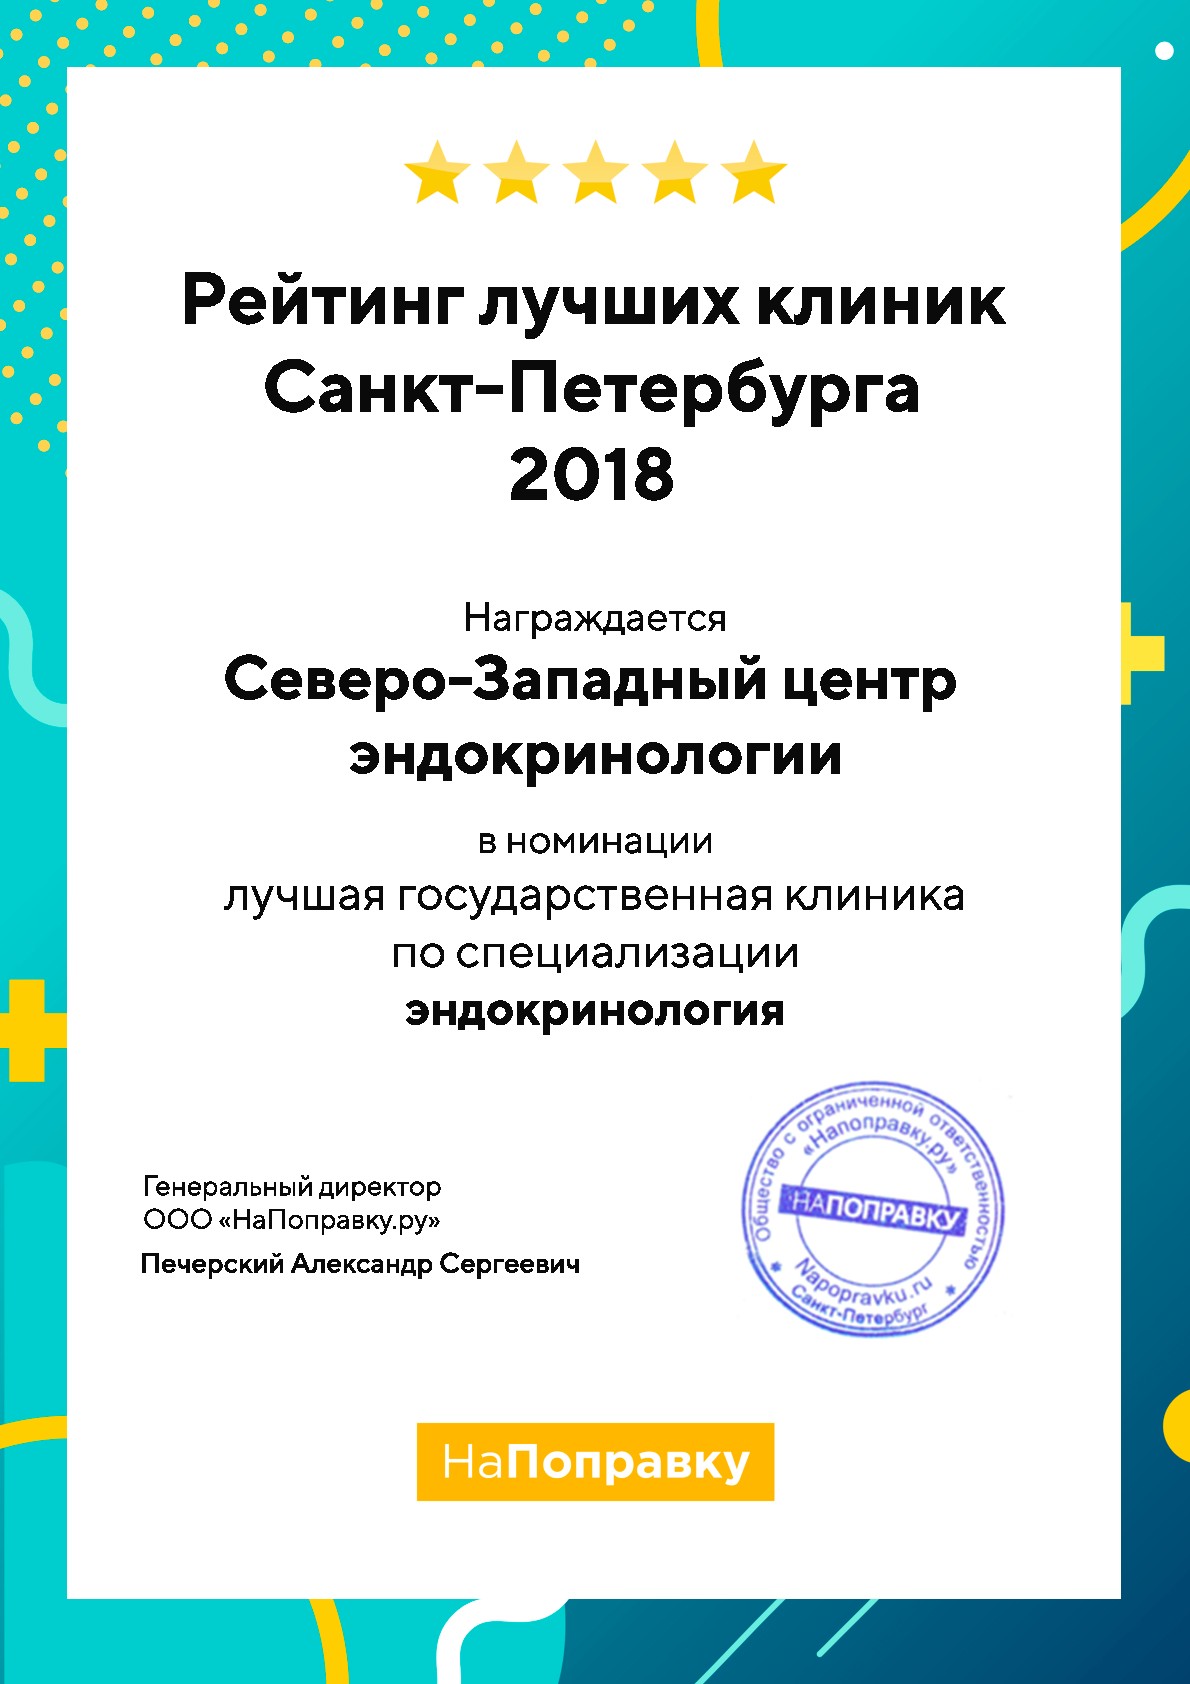 Северо-Западный центр эндокринологии — победитель среди клиник Санкт-Петербурга в номинации Эндокринология